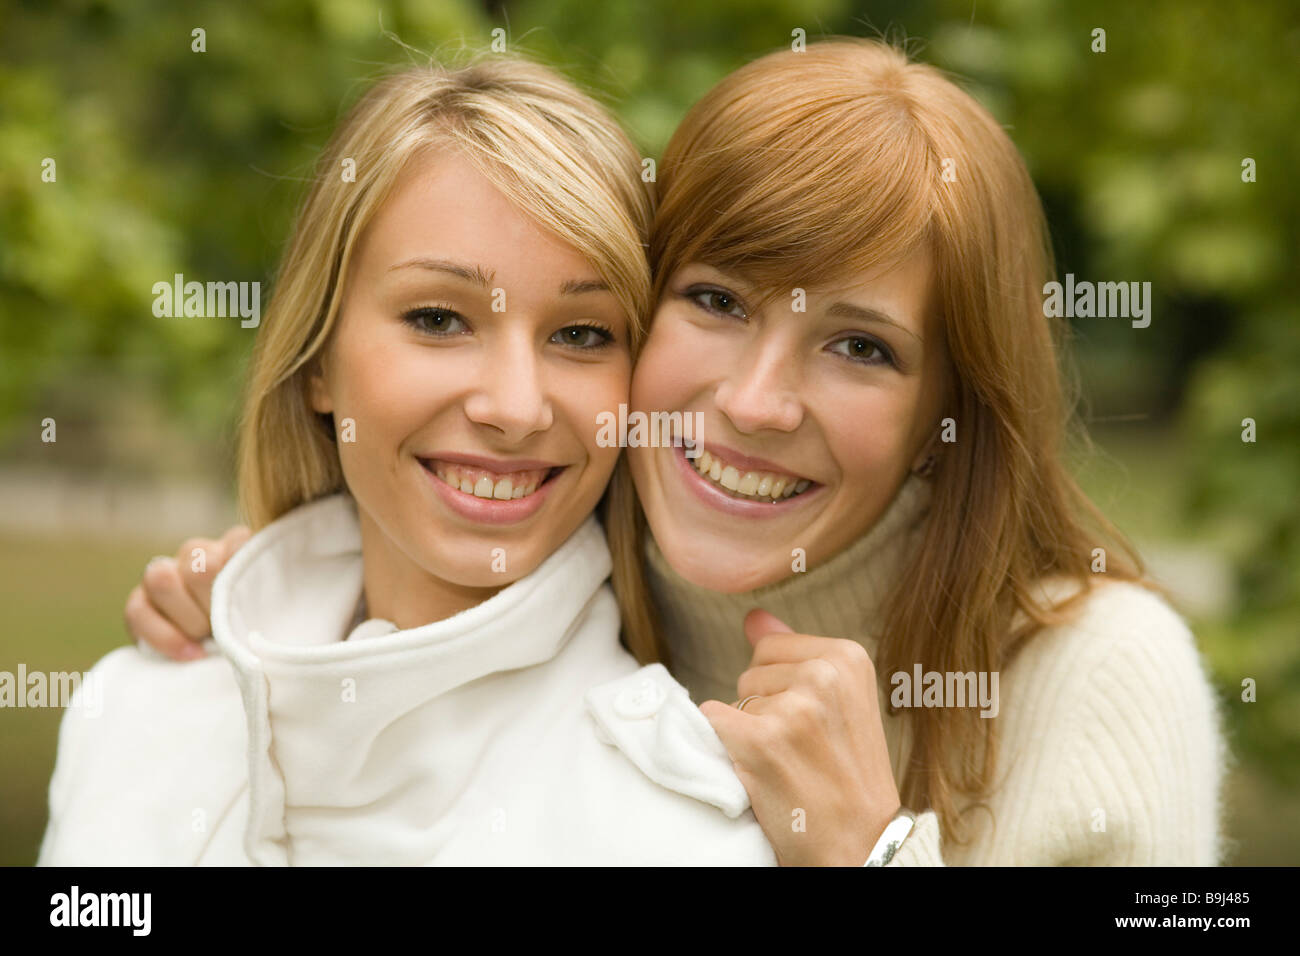 Junge Frau mit ihrer Freundin Stockfoto